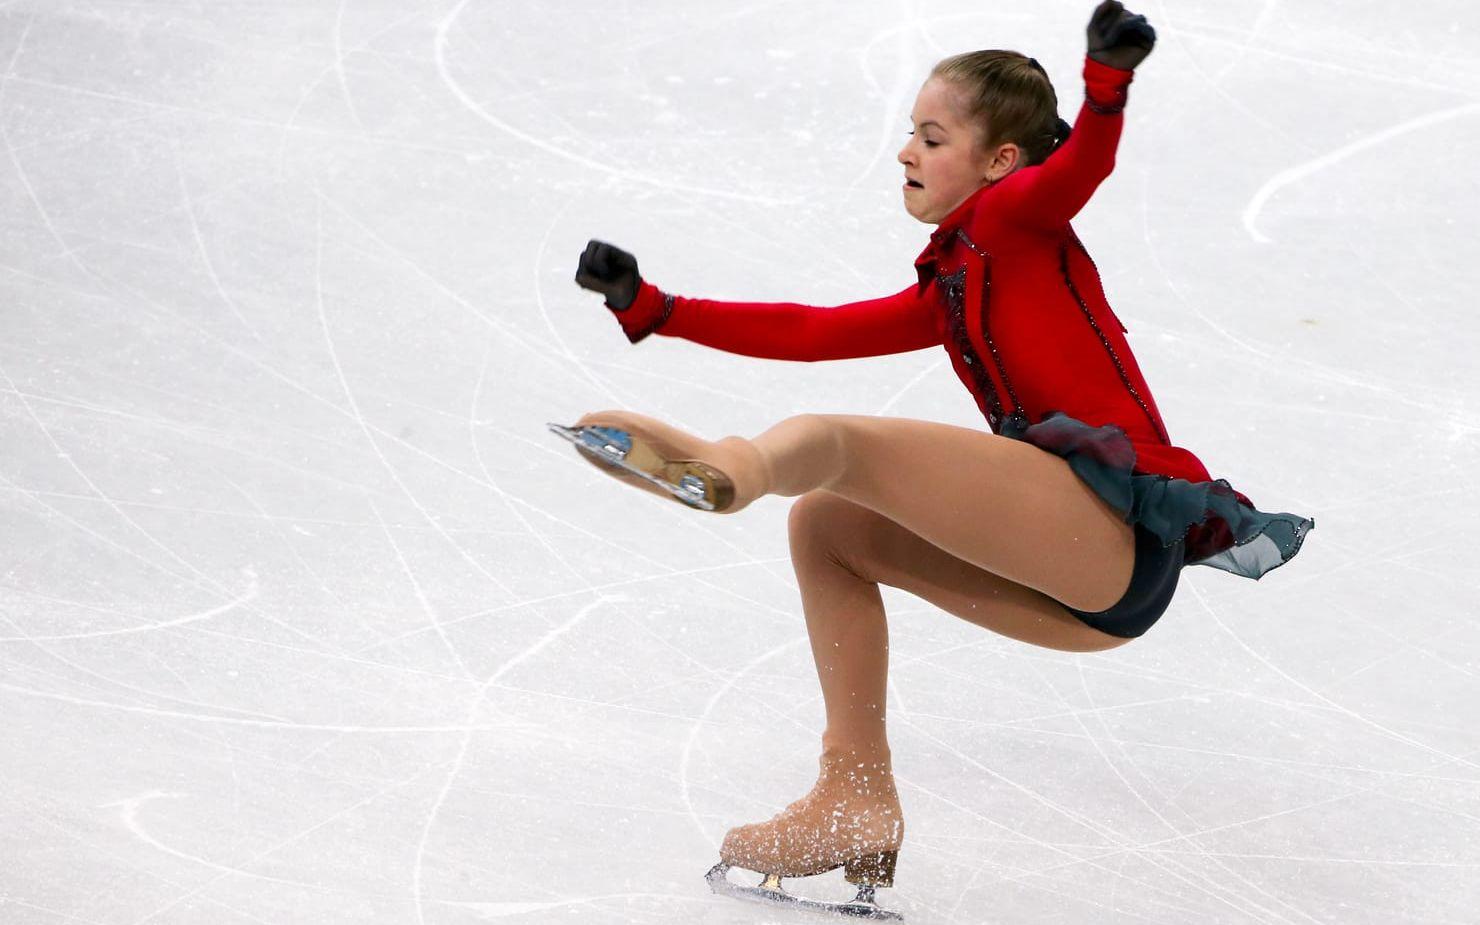 OS-guldmedaljören Julia Lipnitskaja slutar som 19-åring då hon lider av anorexi: "Jag vill tacka alla fans för deras kärlek". Bild: Bildbyrån